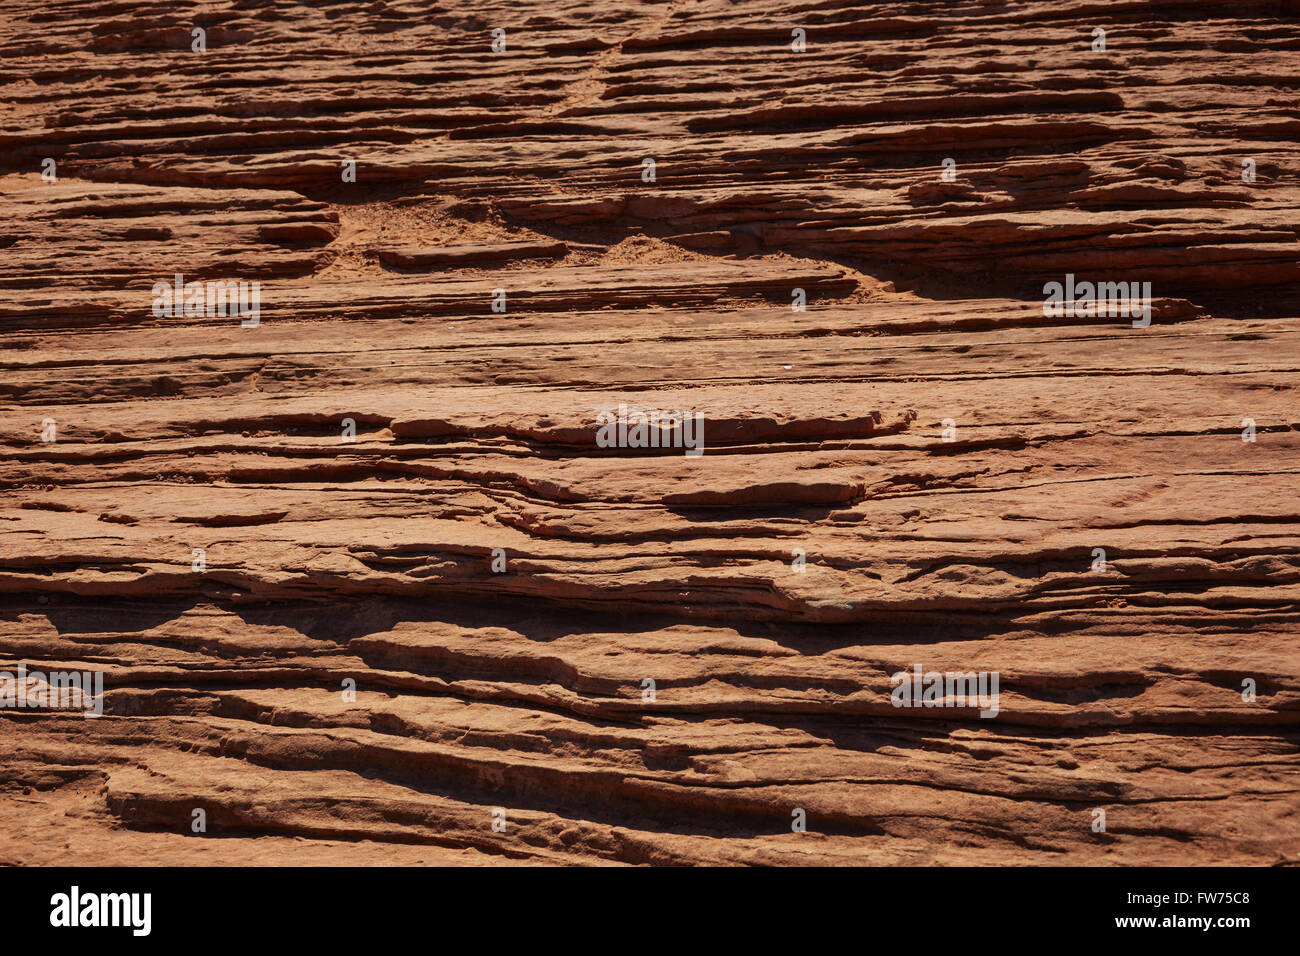 layers of sedimentary rock, Page, Arizona, USA Stock Photo